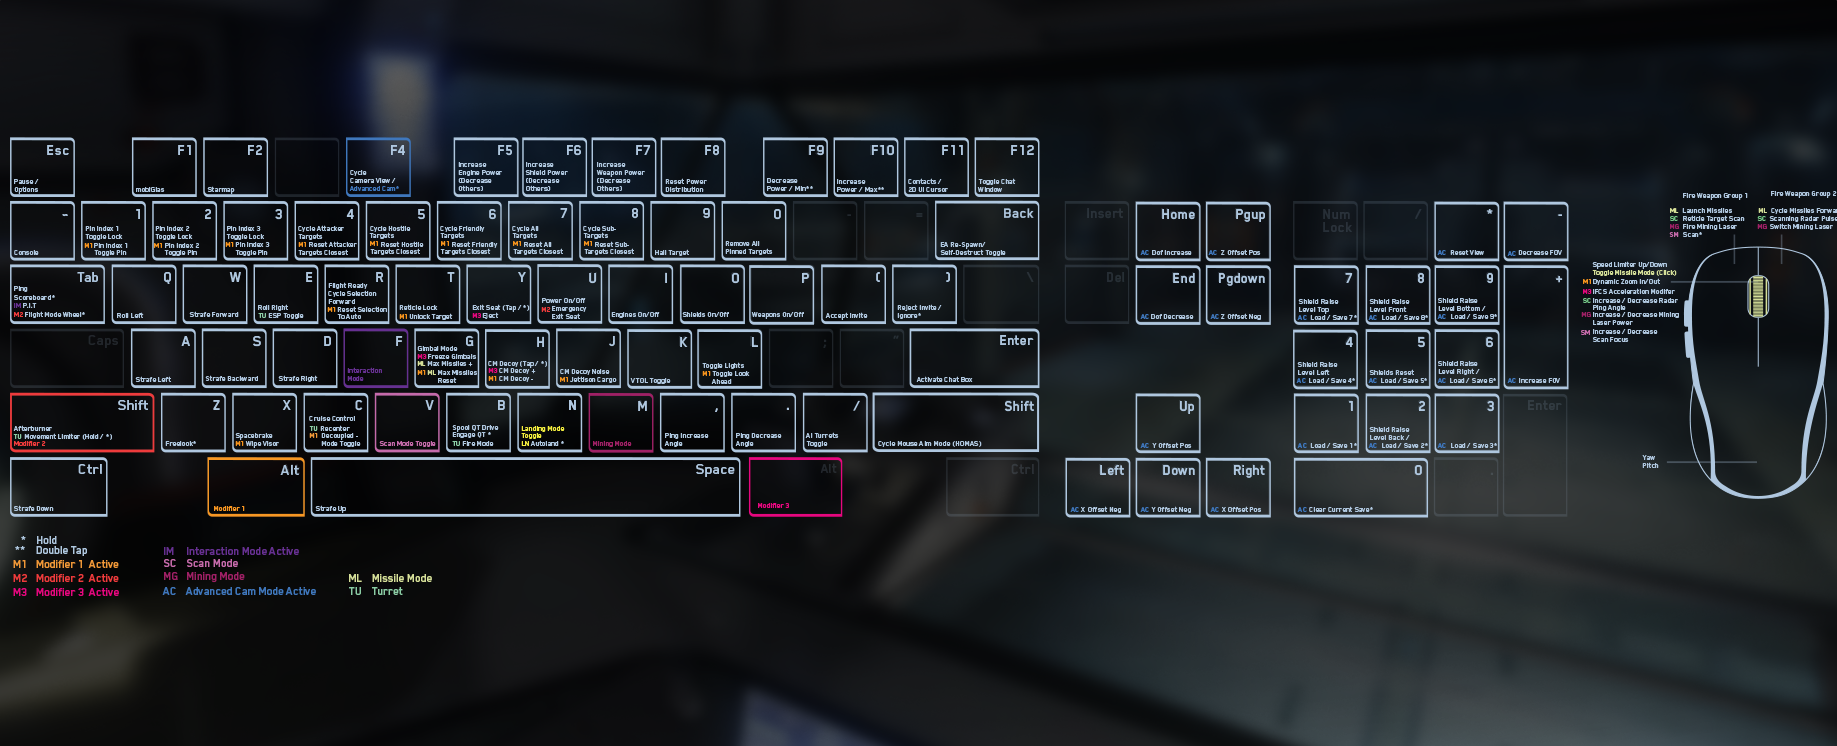 Keyboard layout in Star Citizen settings menu